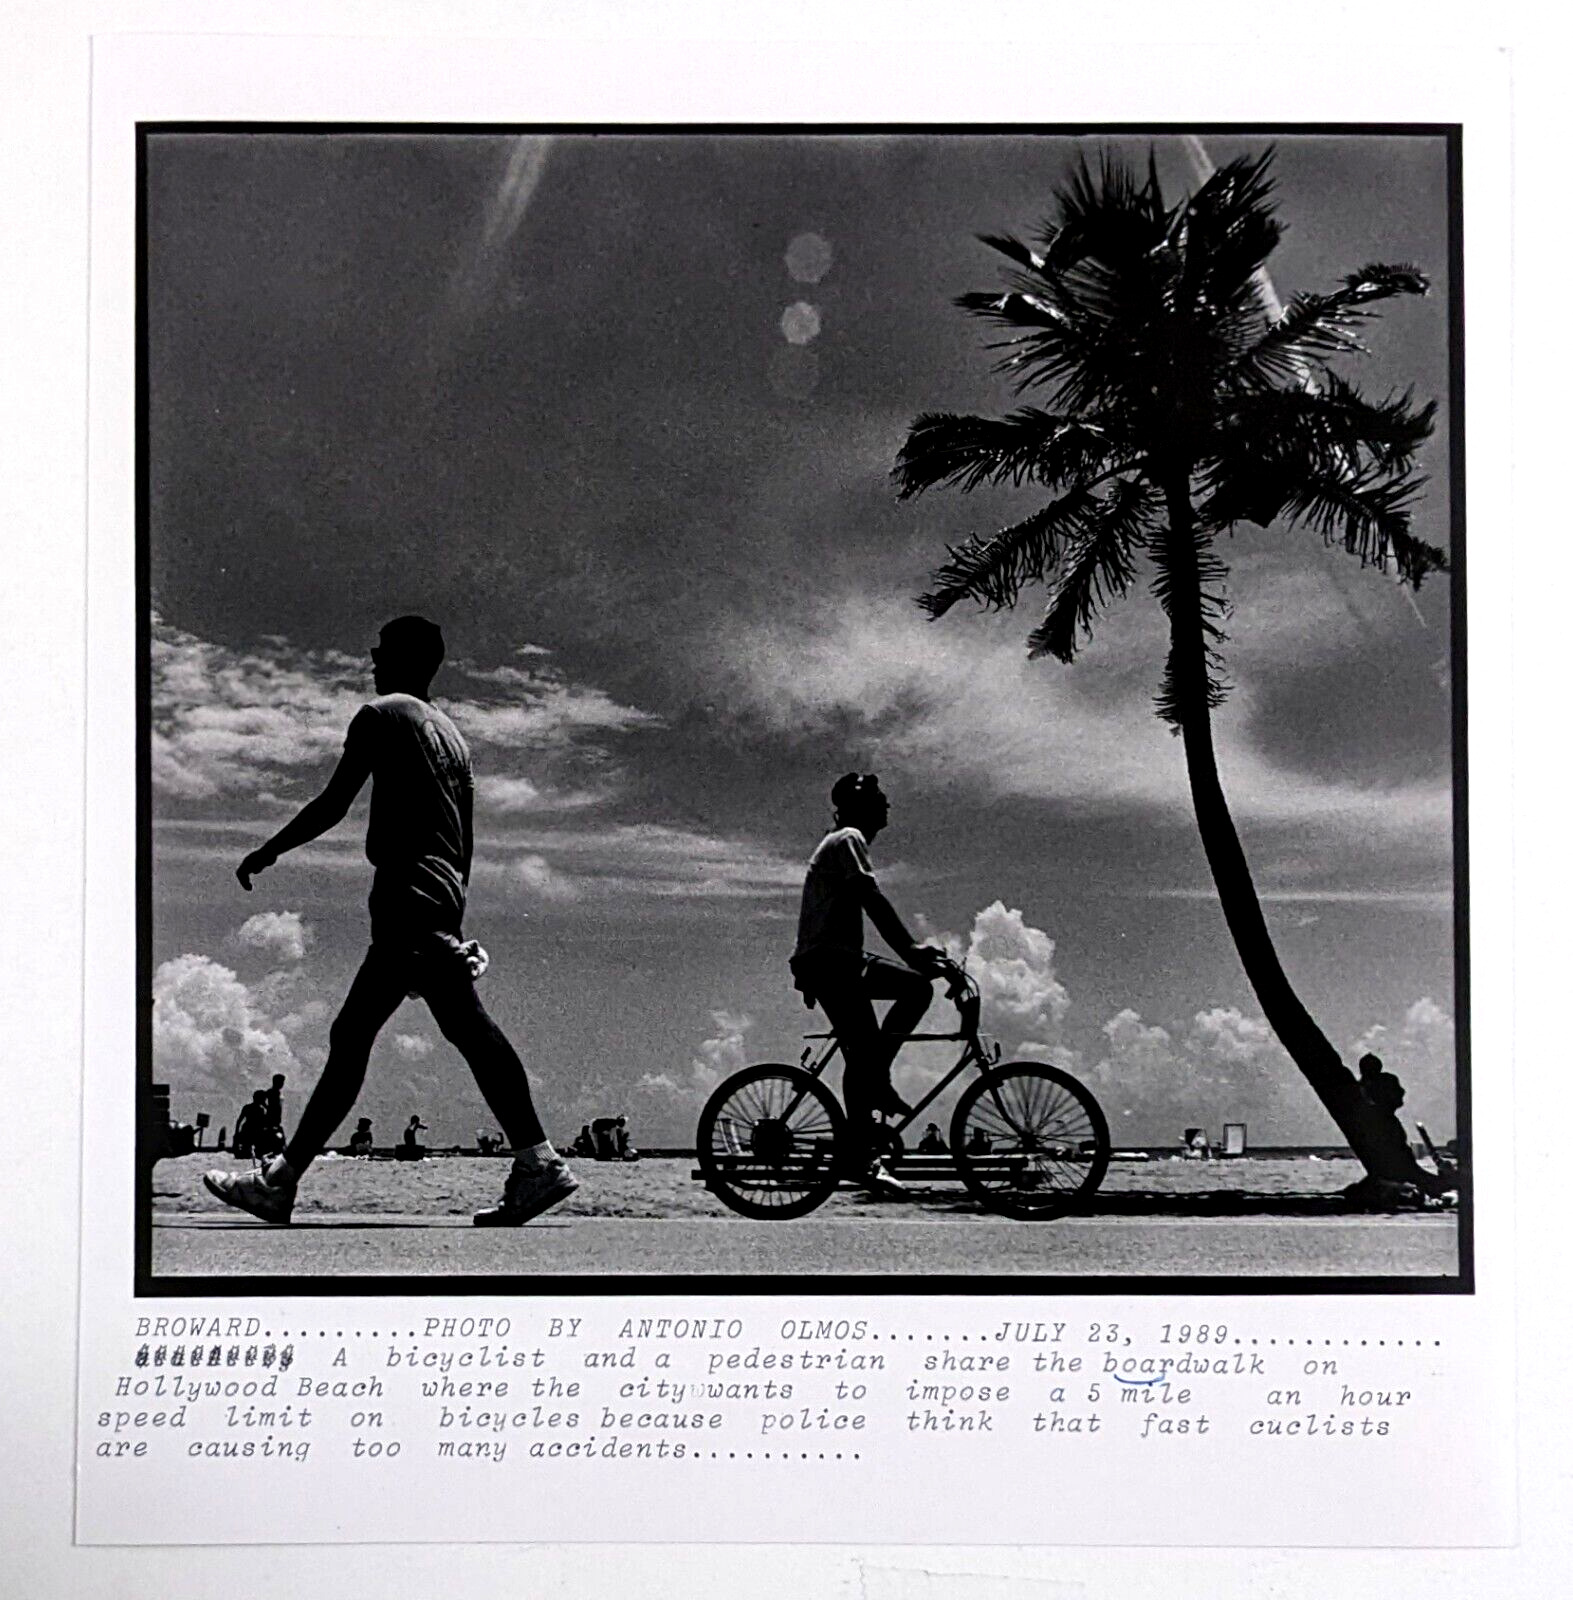 1989 Hollywood Beach Florida Boardwalk Cyclist Pedestrian Vintage Press Photo